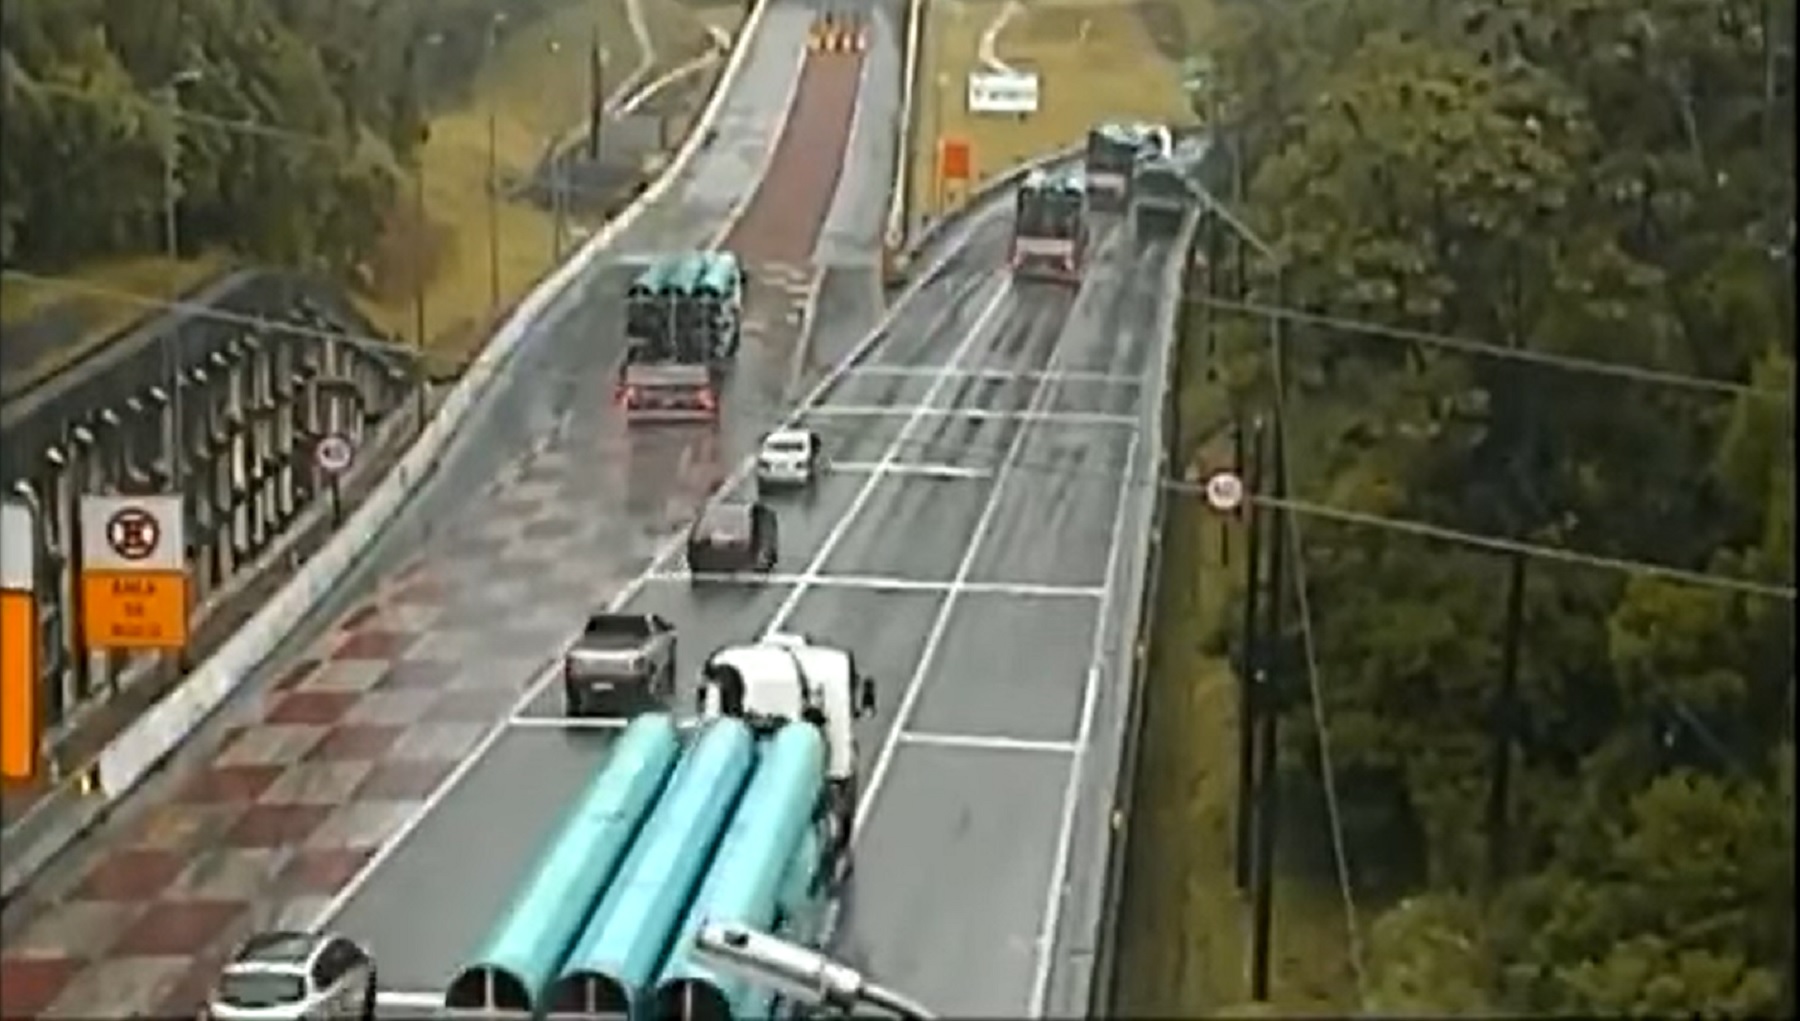 Caminhão transportando 26 toneladas acessa área de escape na BR - 376, no Paraná